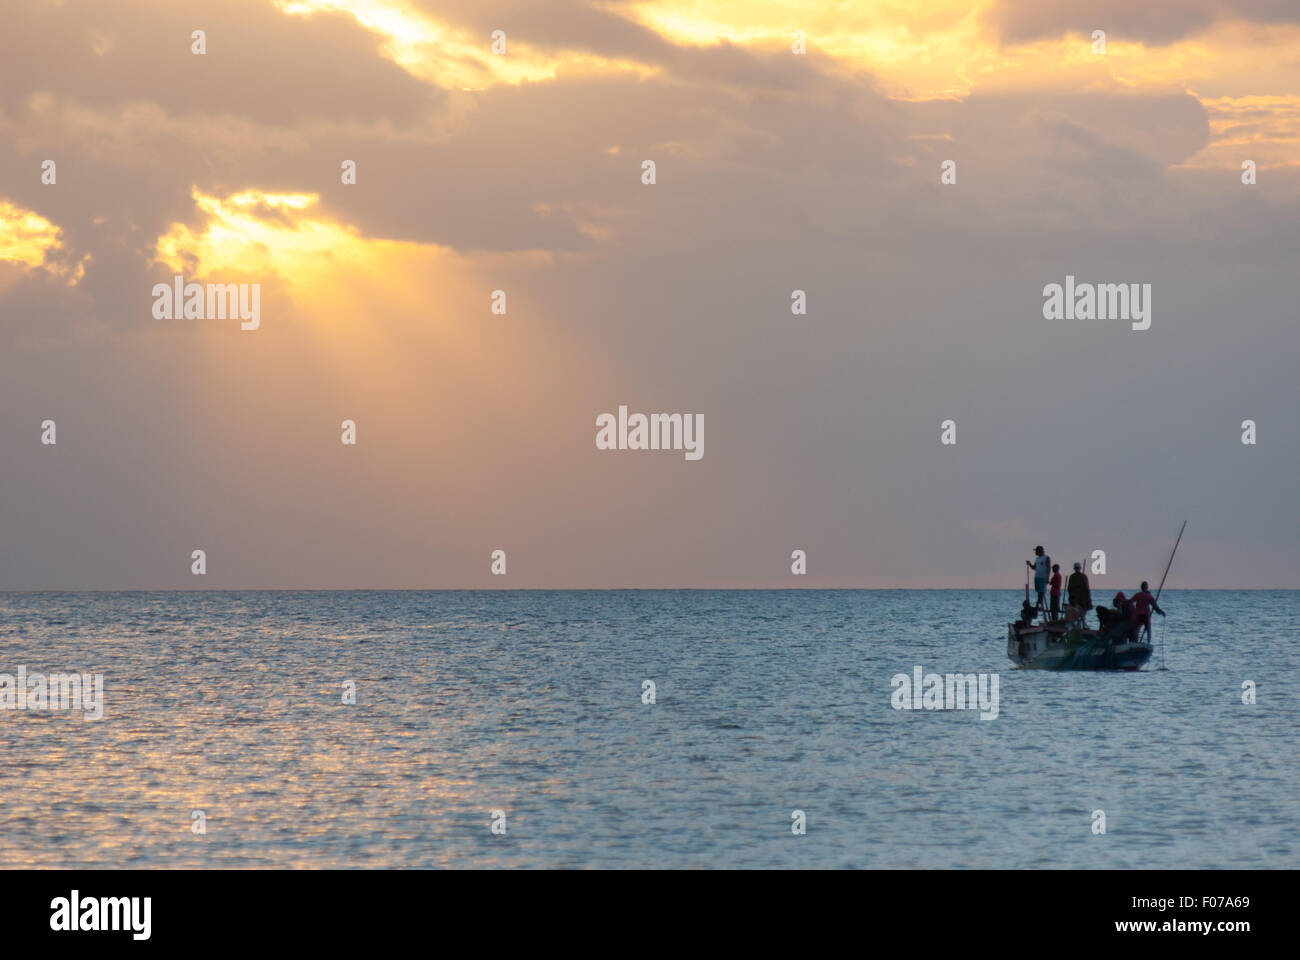 La barca da pesca che scivola sul mare di Savu intorno al tramonto al largo della costa dell'isola di Rote, vista da Batu Termanu a Rote Ndao, Nusa Tenggara orientale, Indonesia. Foto Stock